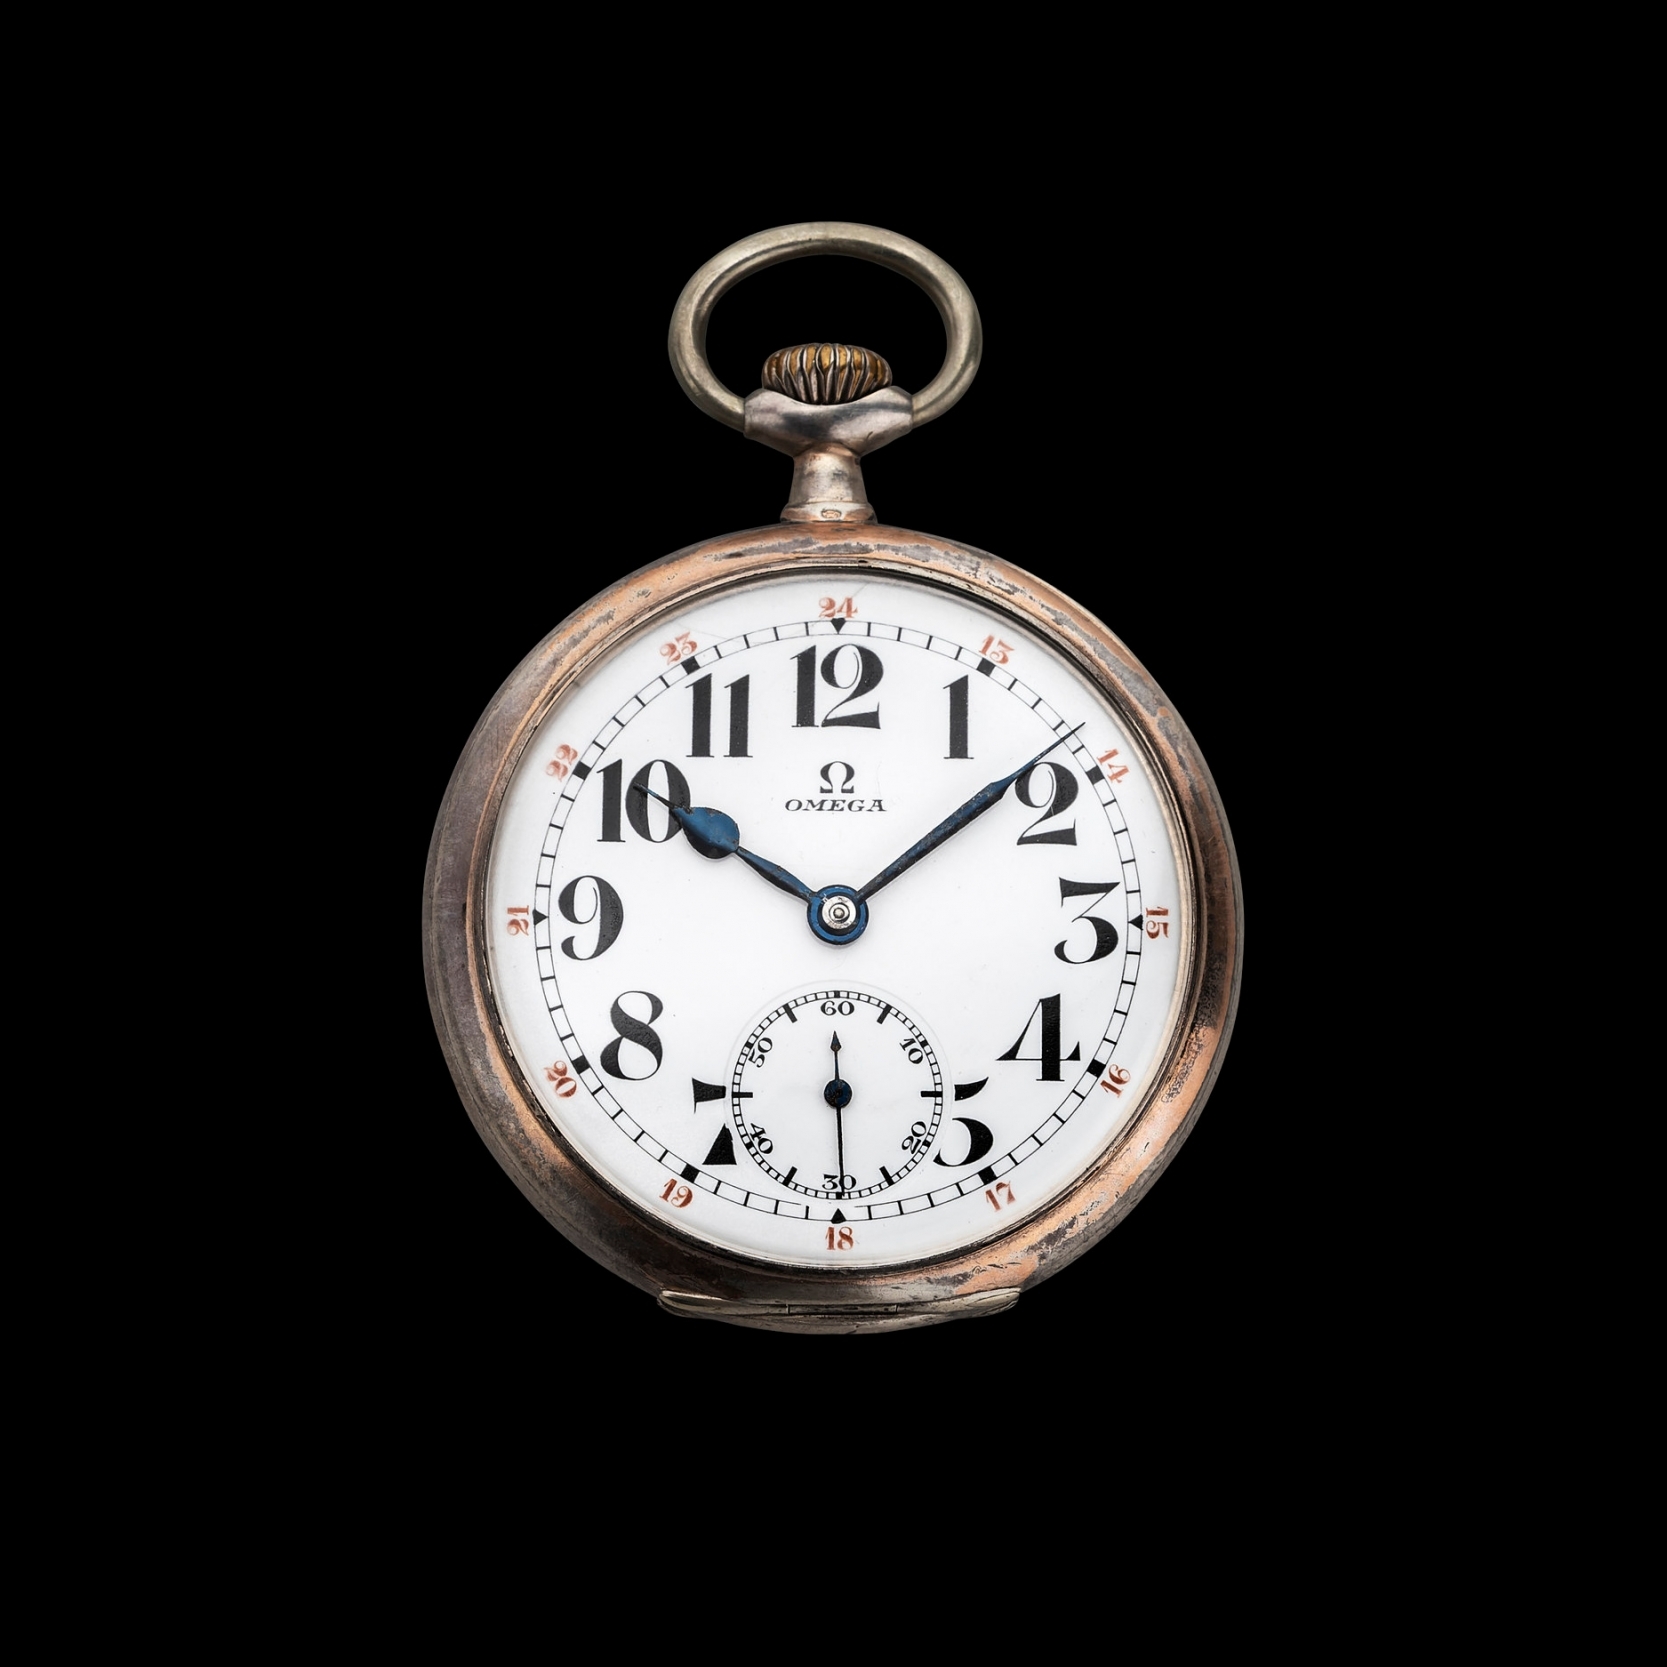 Railwayman’s watch by Omega, Switzerland, 1900